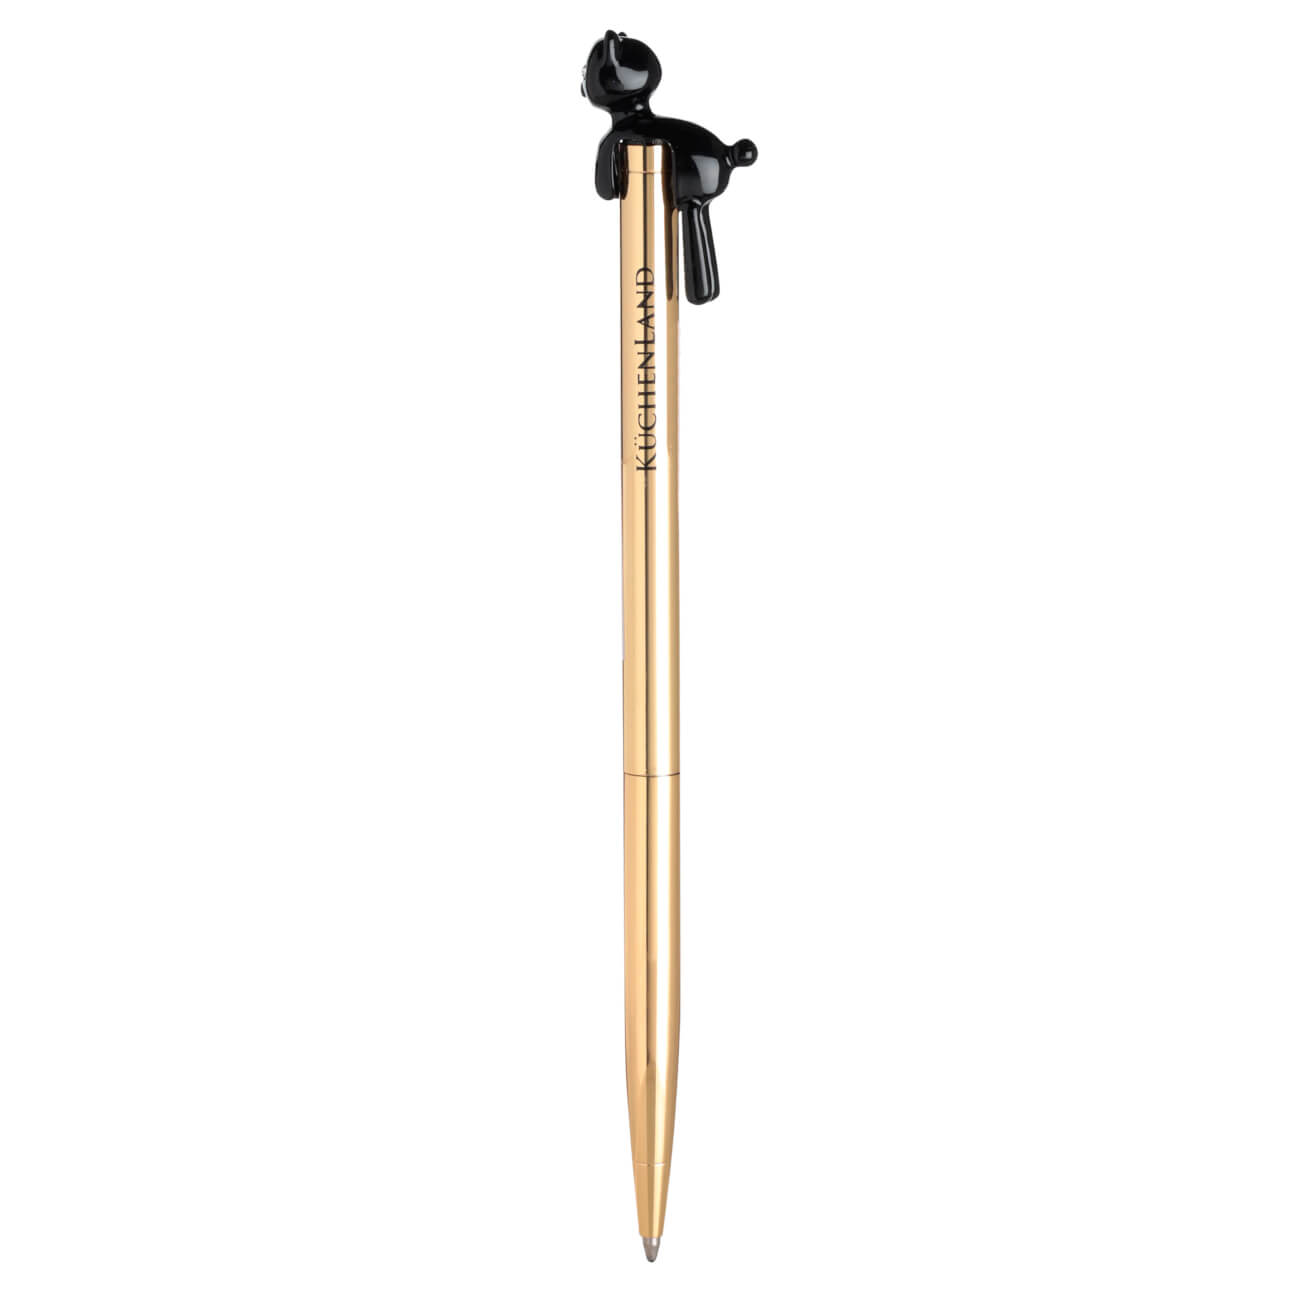 Ручка шариковая, 14 см, с фигуркой, металл, золотистая, Черный кот, Draw figure изображение № 1